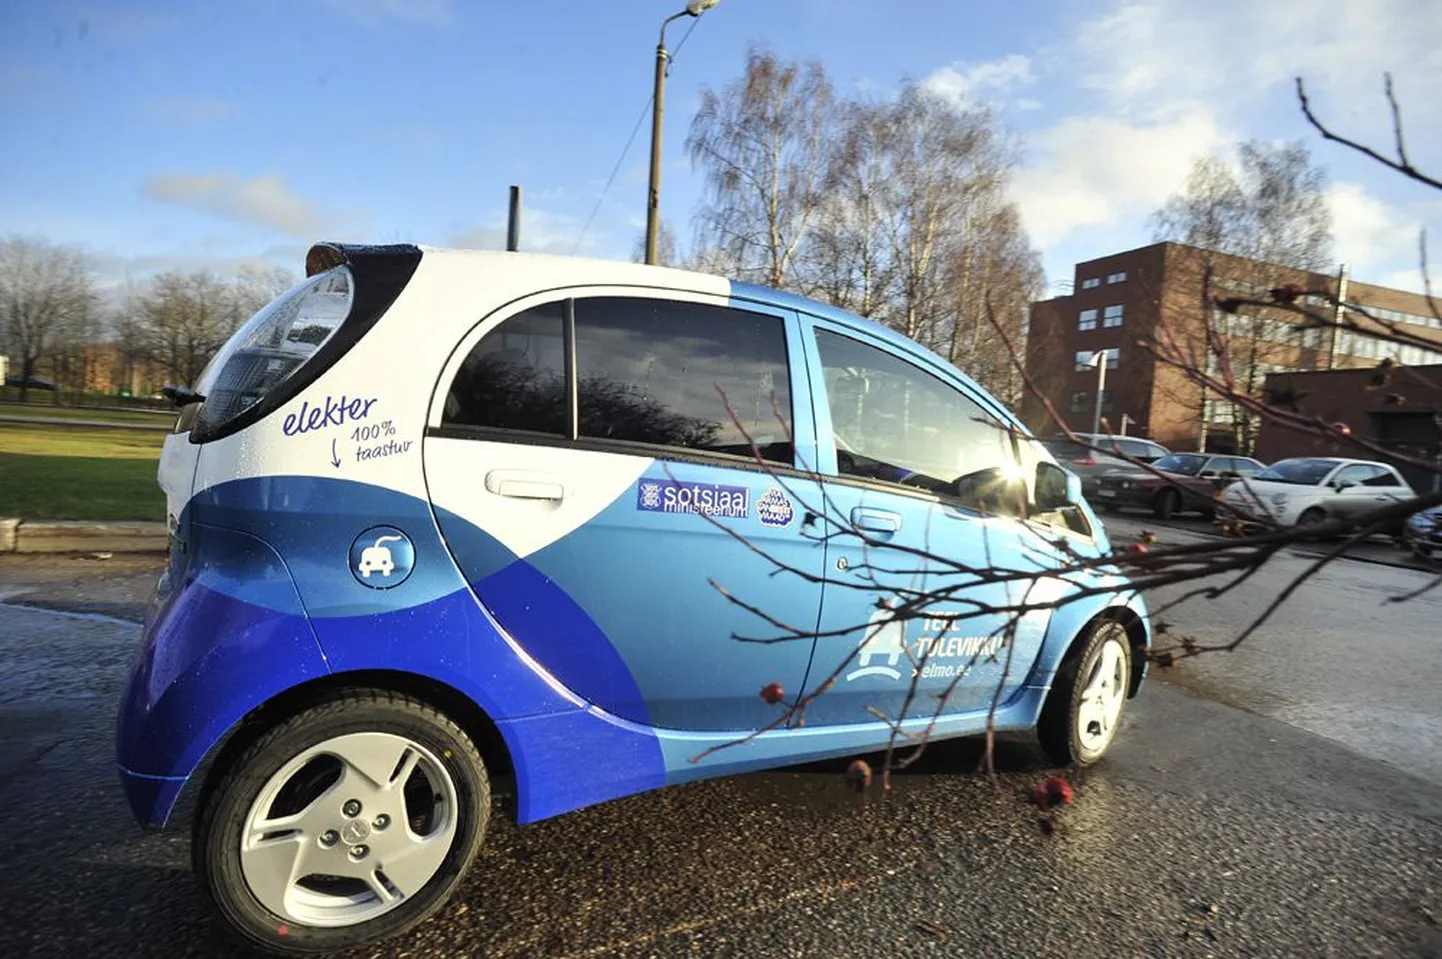 Üks eelmise kuu lõpus peetud keskkonnamessil Tartu sotsiaaltöötajatele üle antud esimestest elektriautodest.